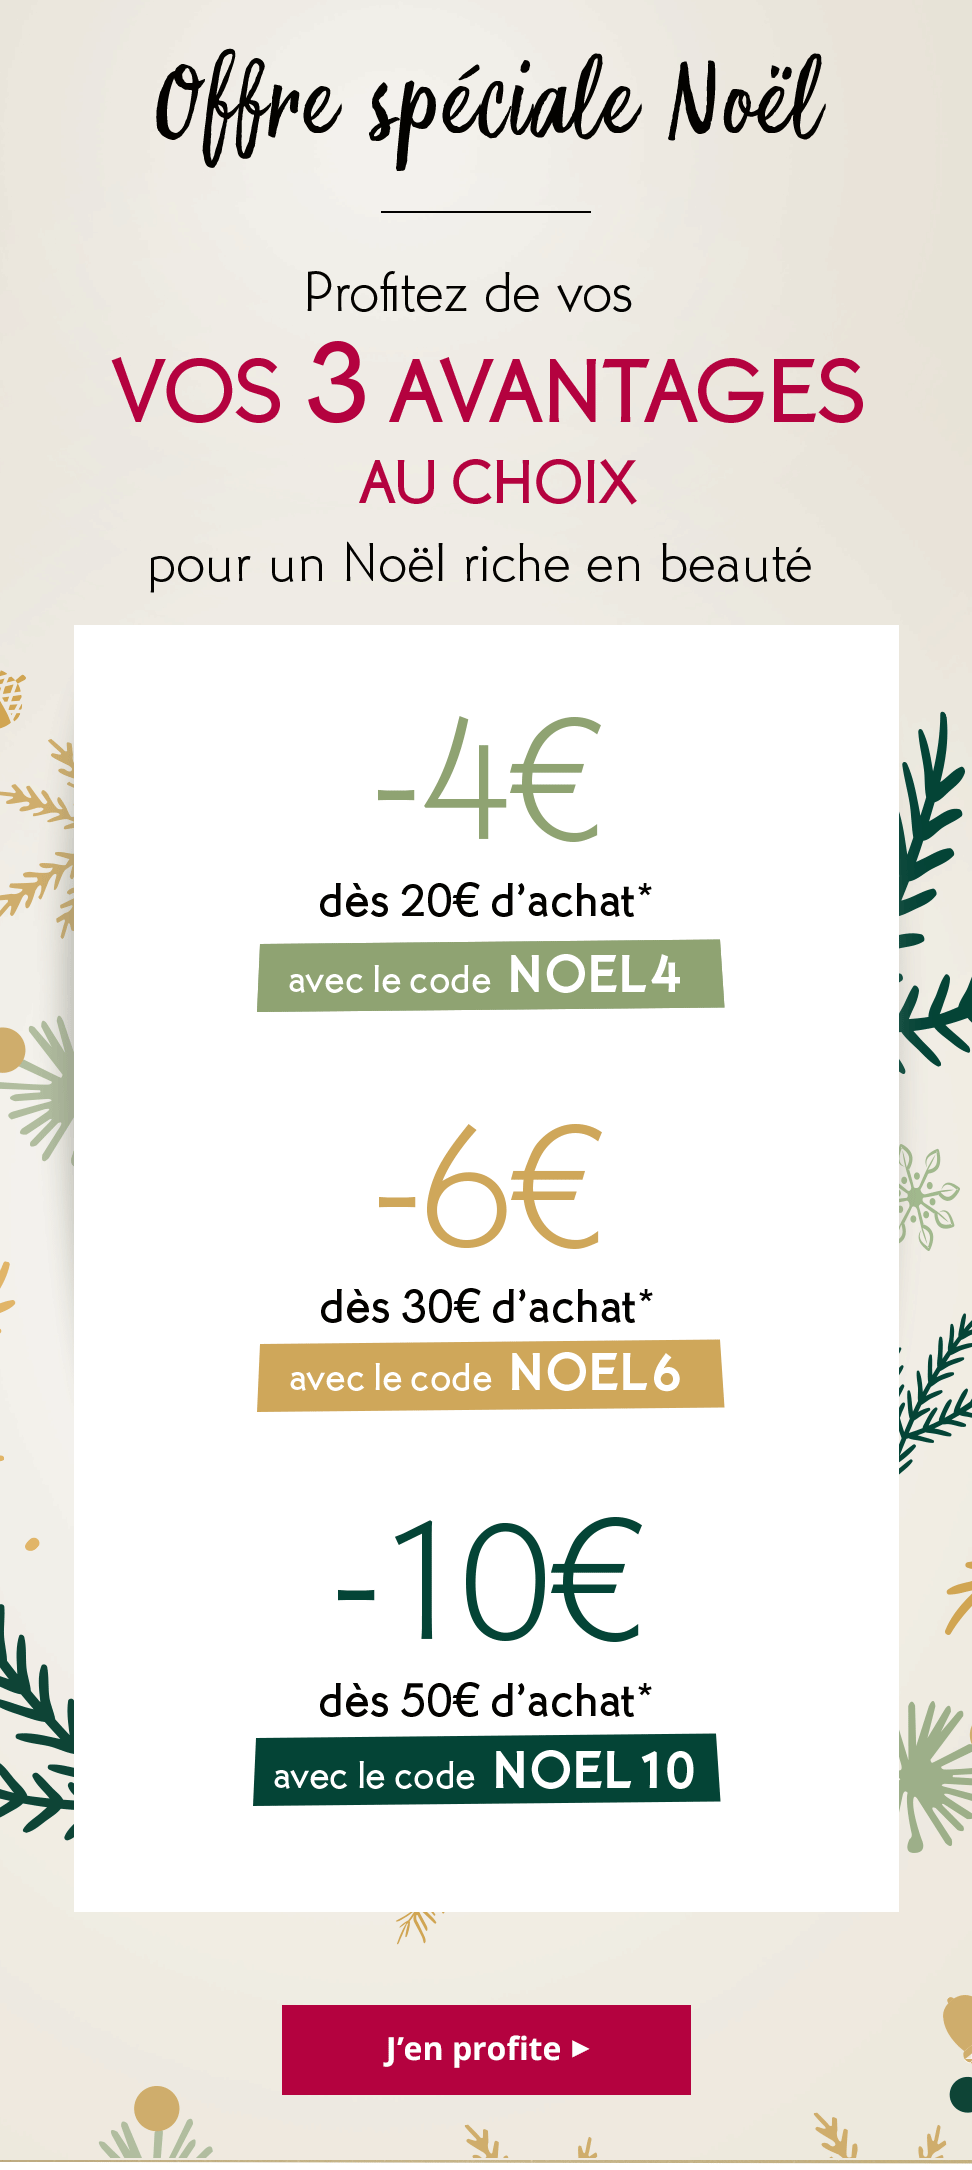 Profitez de vos 3 avantages au choix: 4€ dès 20€ d’achat* avec le code NOEL4 - 6€ dès 30€ d’achat* avec le code NOEL6 - 10€ dès 50€ d’achat* avec le code NOEL10